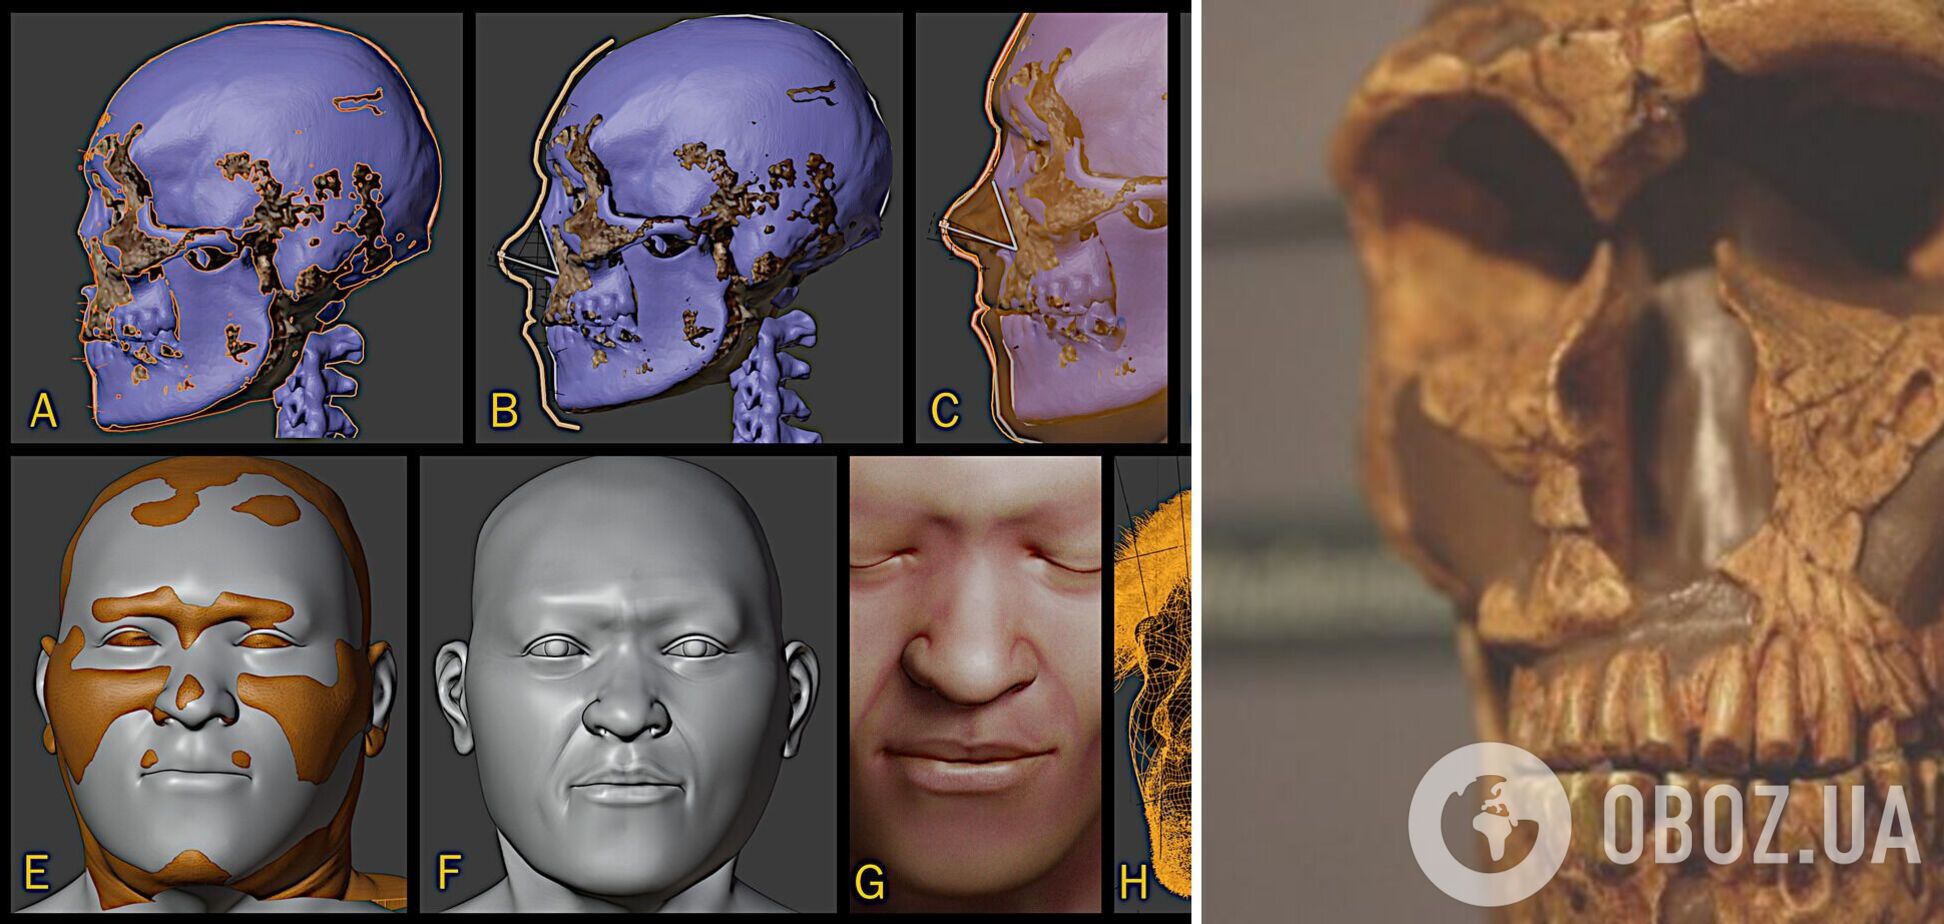 Ученые показали лицо одного из древнейших Homo sapiens, жившего 30 тысяч лет назад